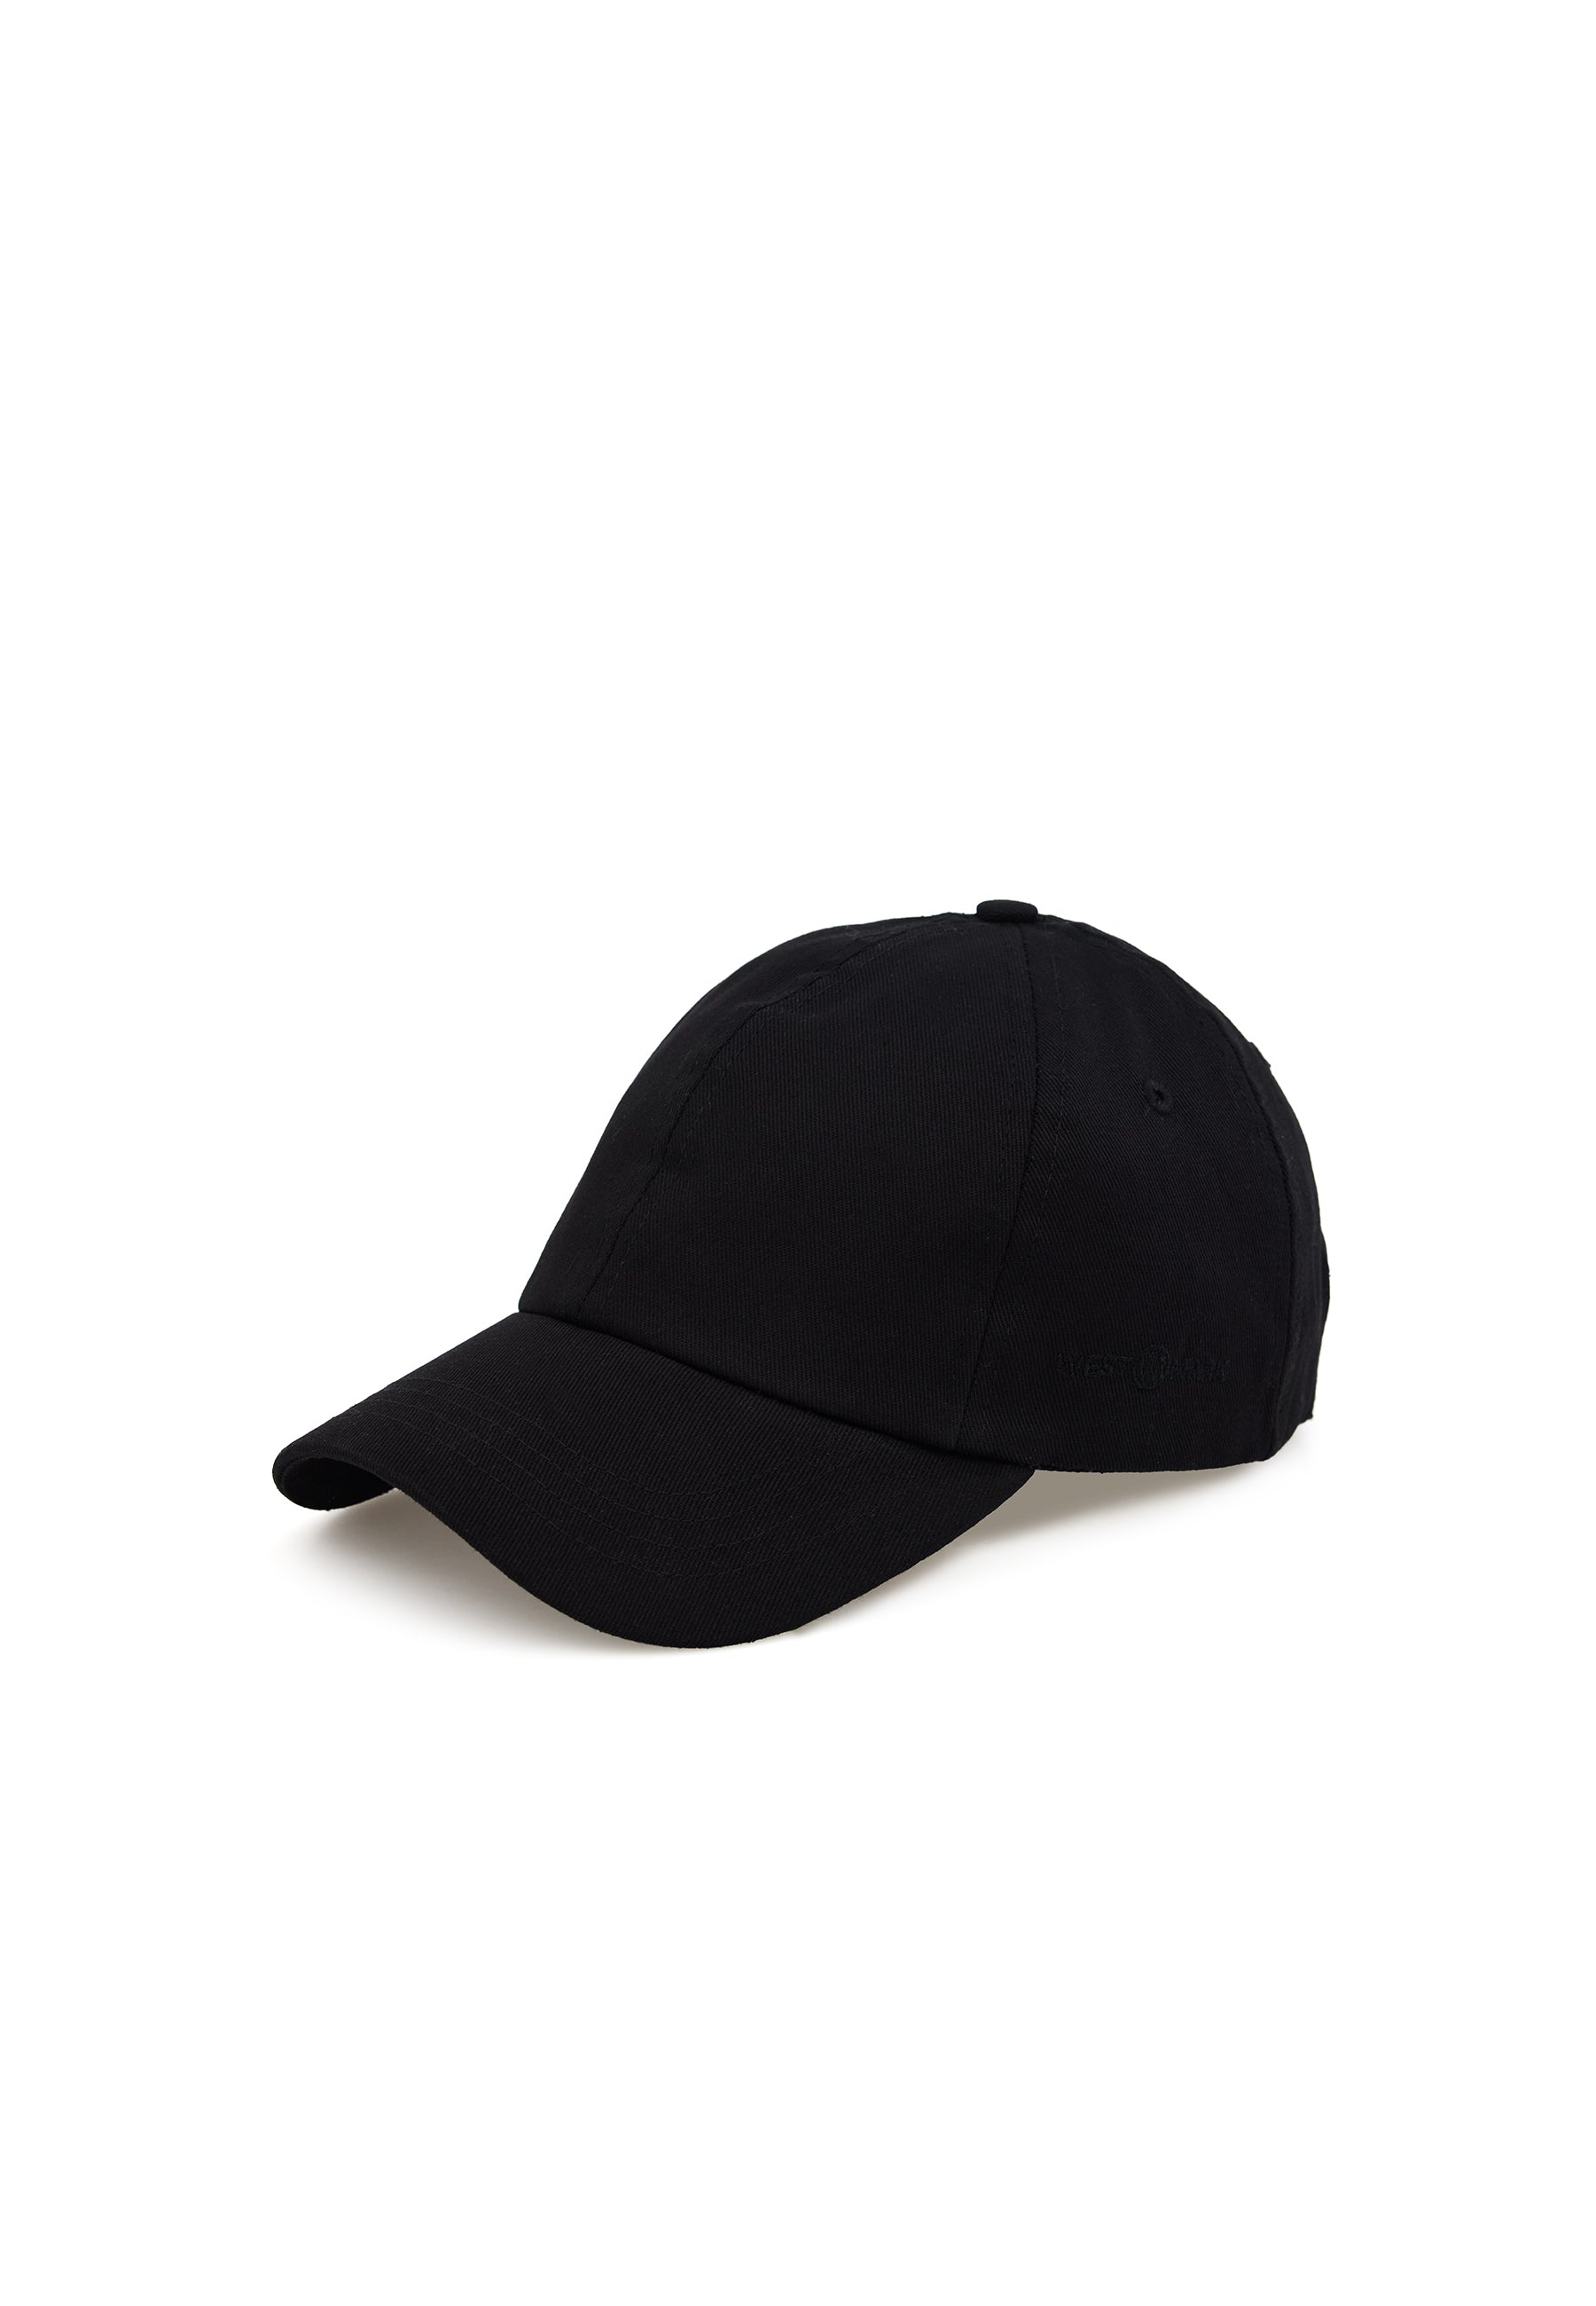 WMCARTER CAP in Black